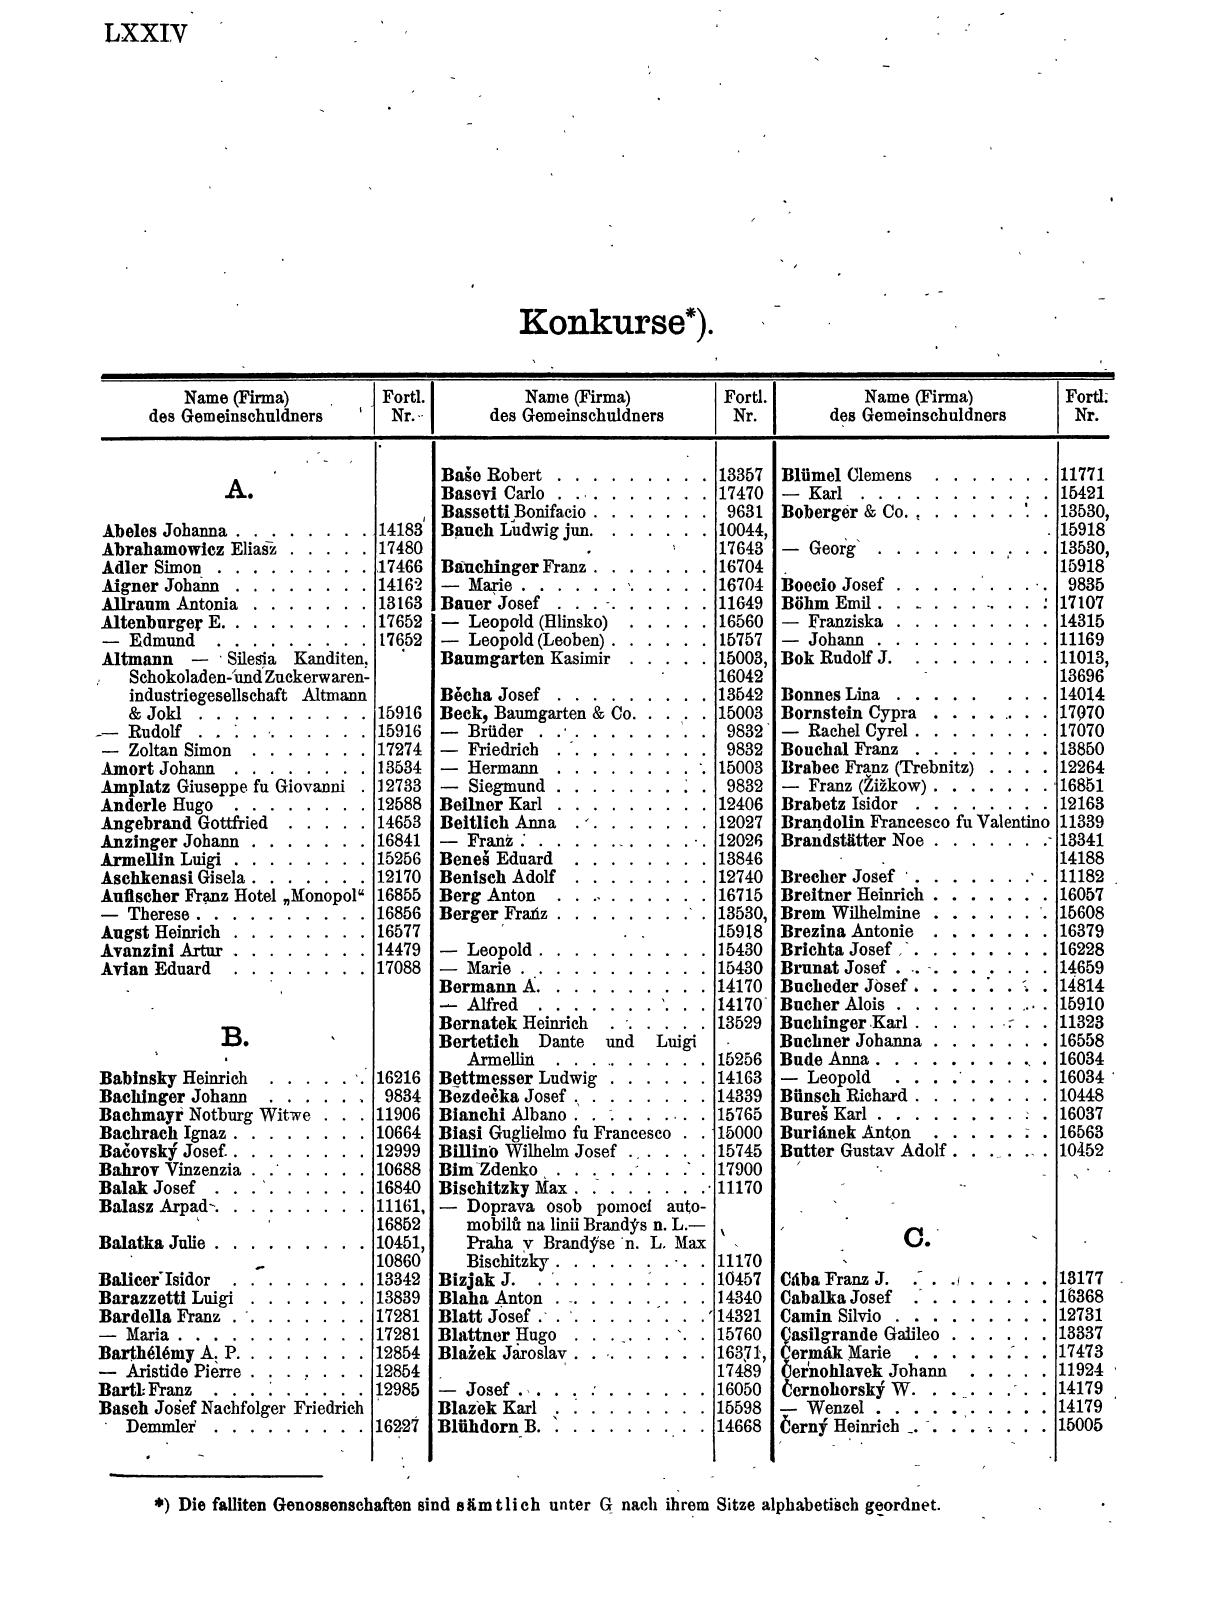 Zentralblatt für die Eintragungen in das Handelsregister 1913, Teil 2 - Seite 78